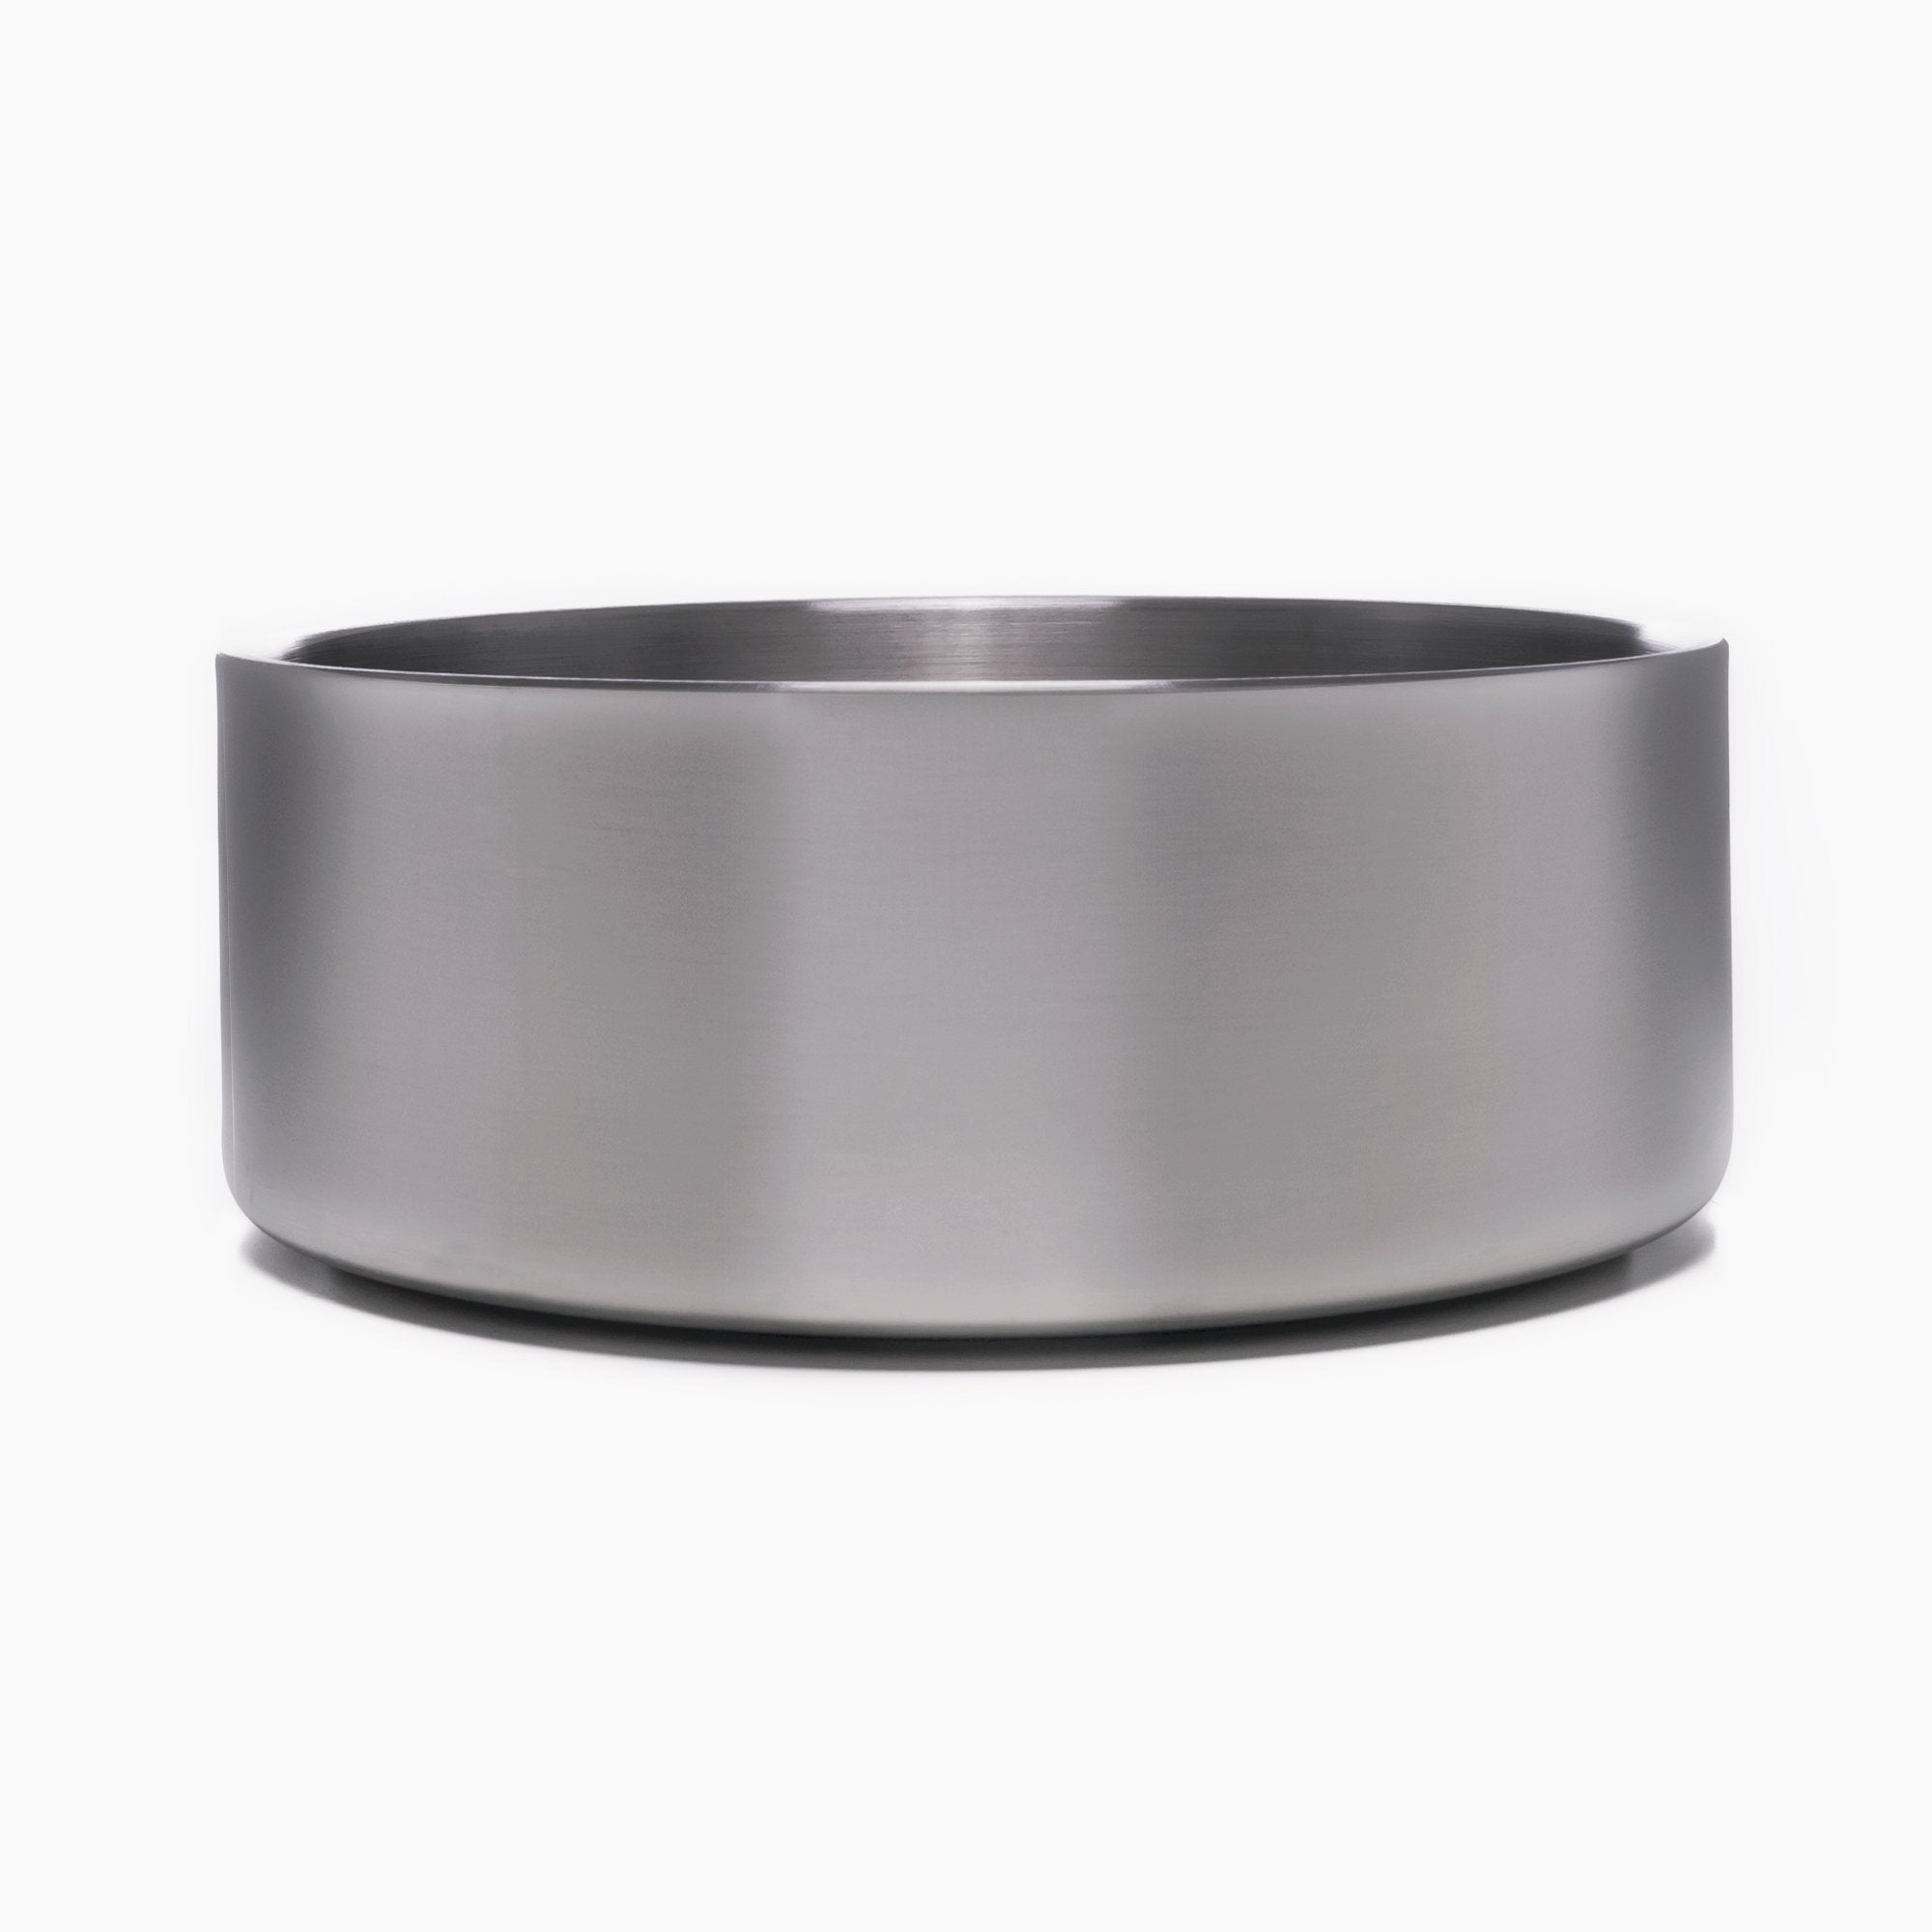 Basics Stainless Steel Dog Bowl